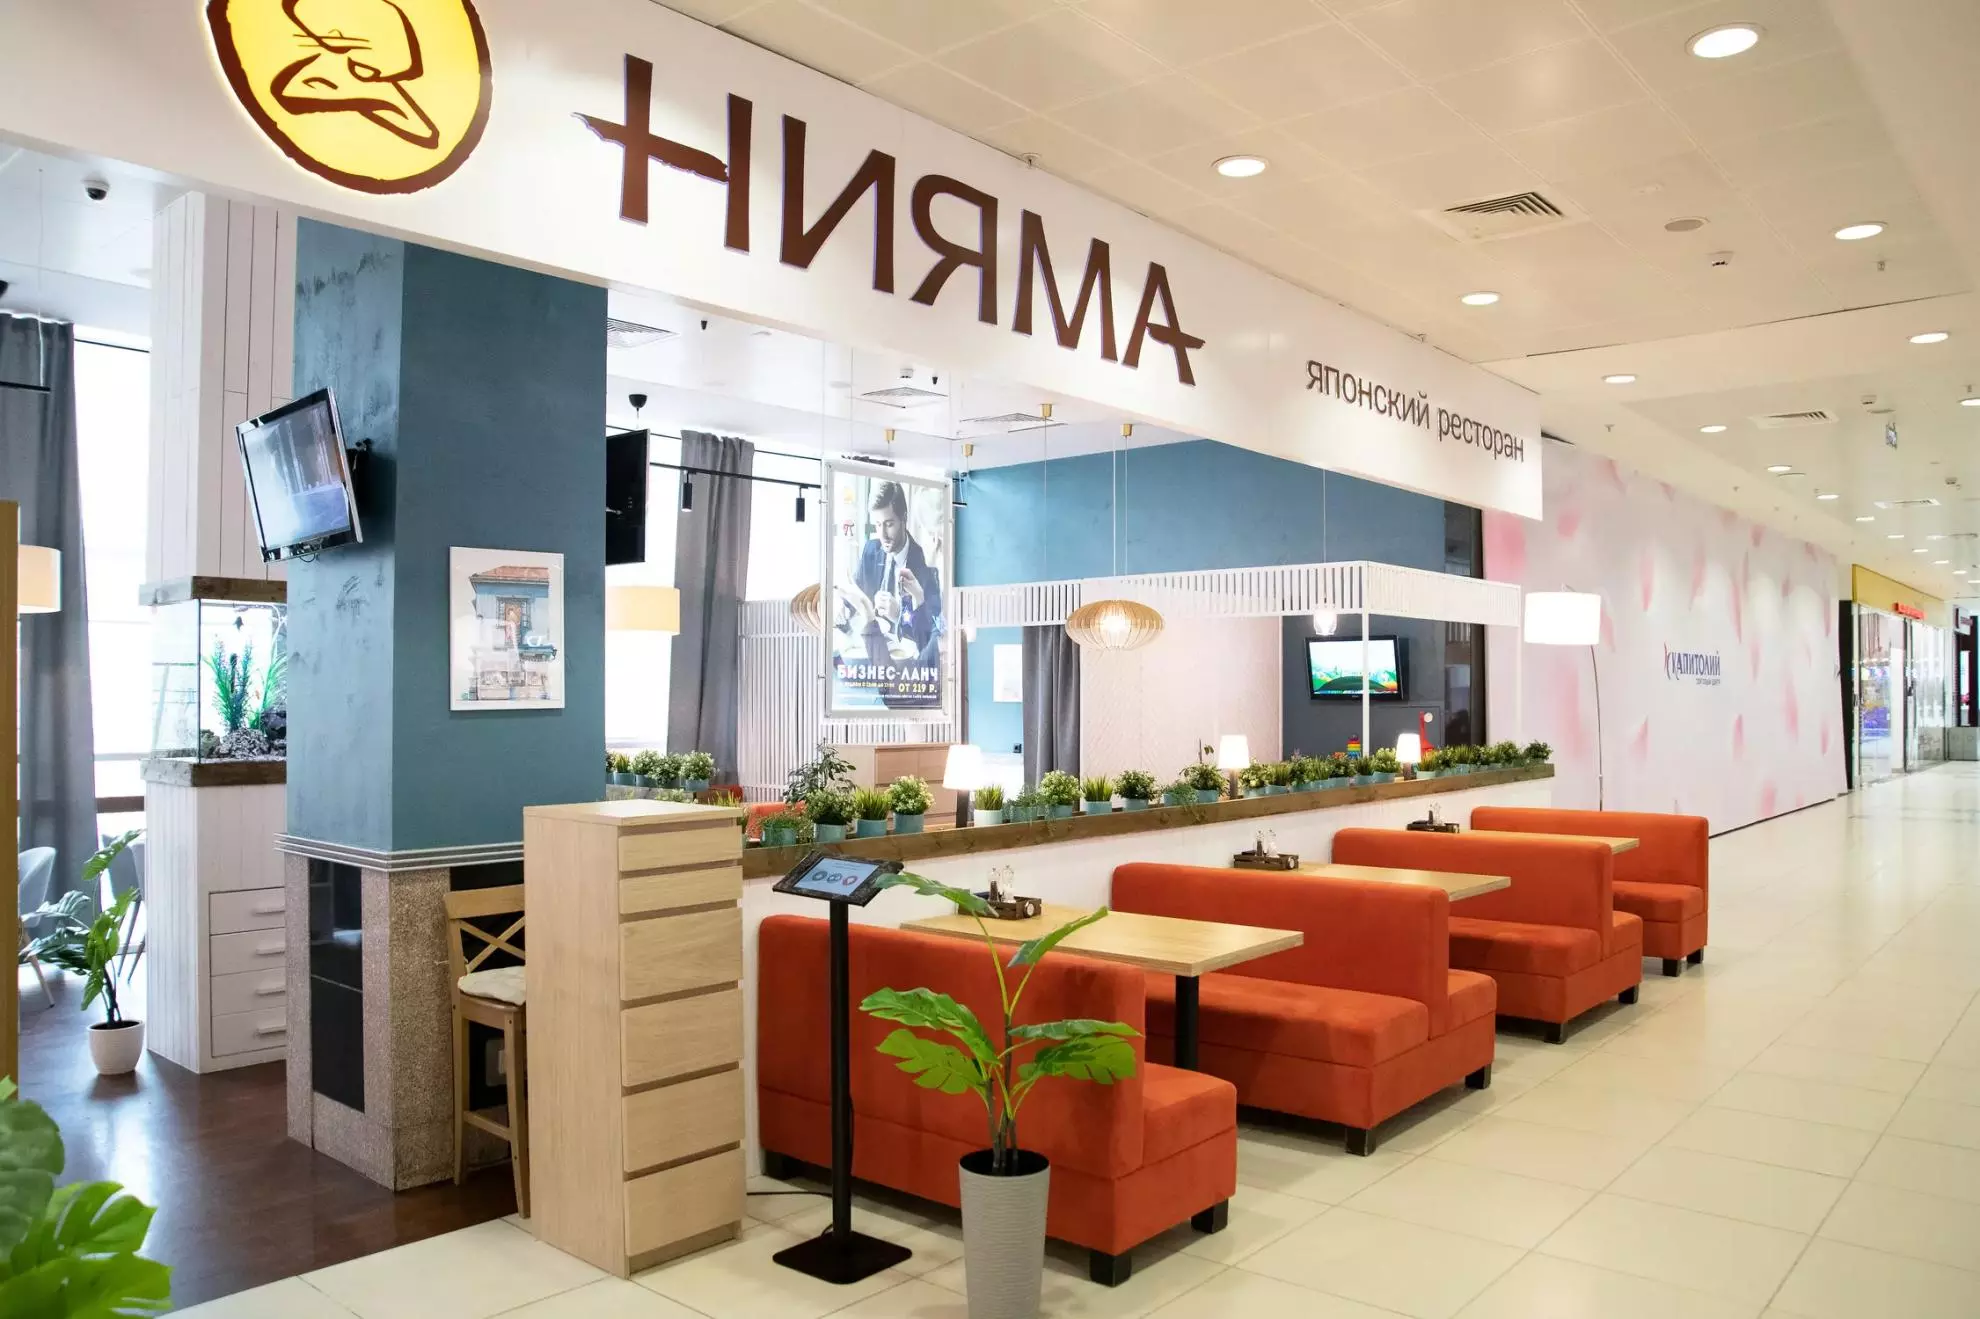 Ресторан Нияма на Севастопольском проспекте фотоминиатюра 17